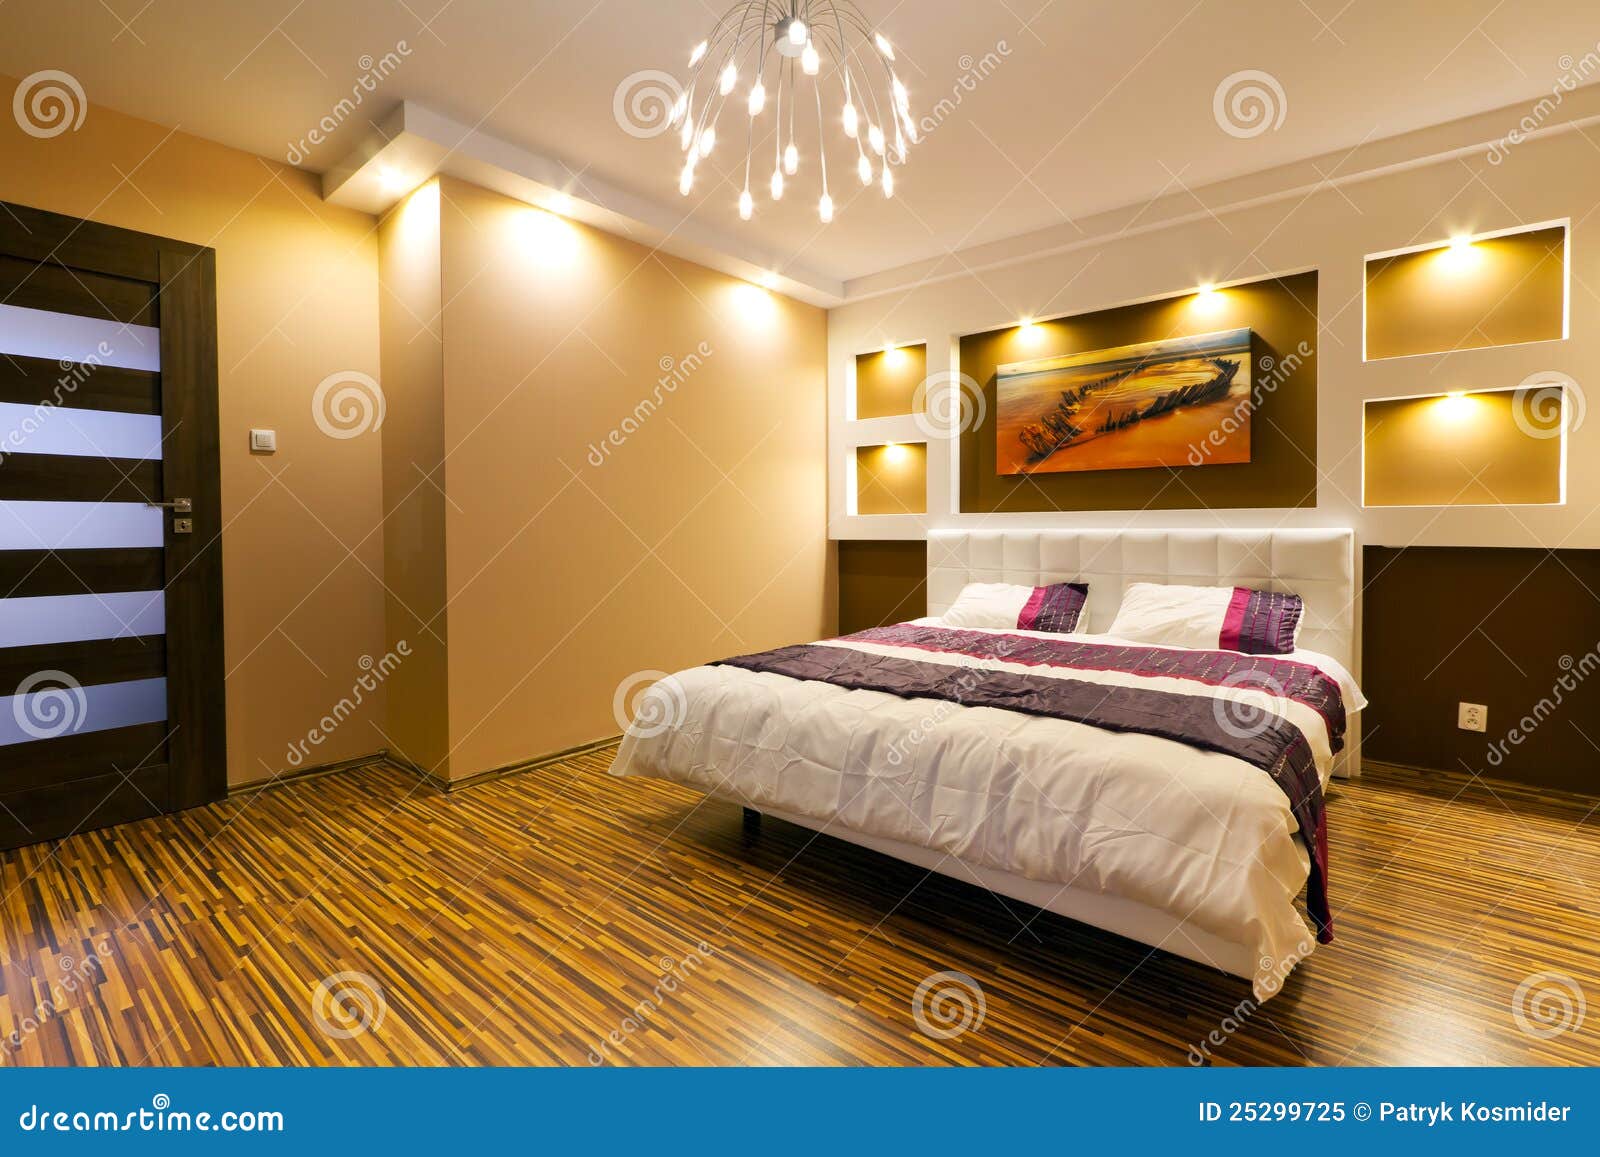 卧室五颜六色现代 库存照片. 图片 包括有 舒适, 装备, 是的, 风扇, 橡皮奶嘴, 拱道, 陈设品, 盖子 - 11951240